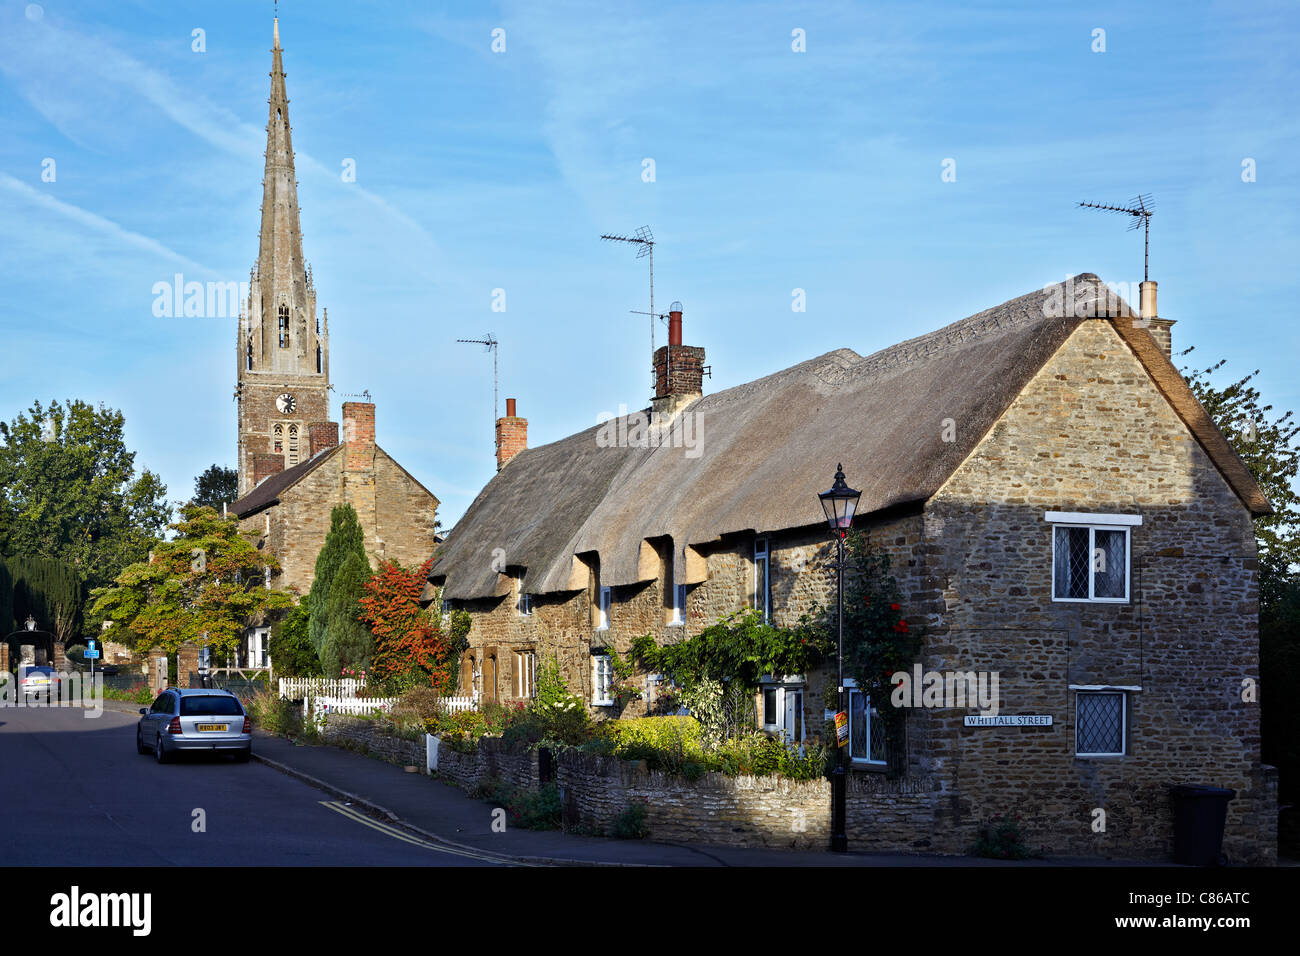 Dorfkirche Großbritannien. Kings Sutton Pfarrkirche und strohgedeckte Hütten Oxfordshire England Großbritannien Stockfoto